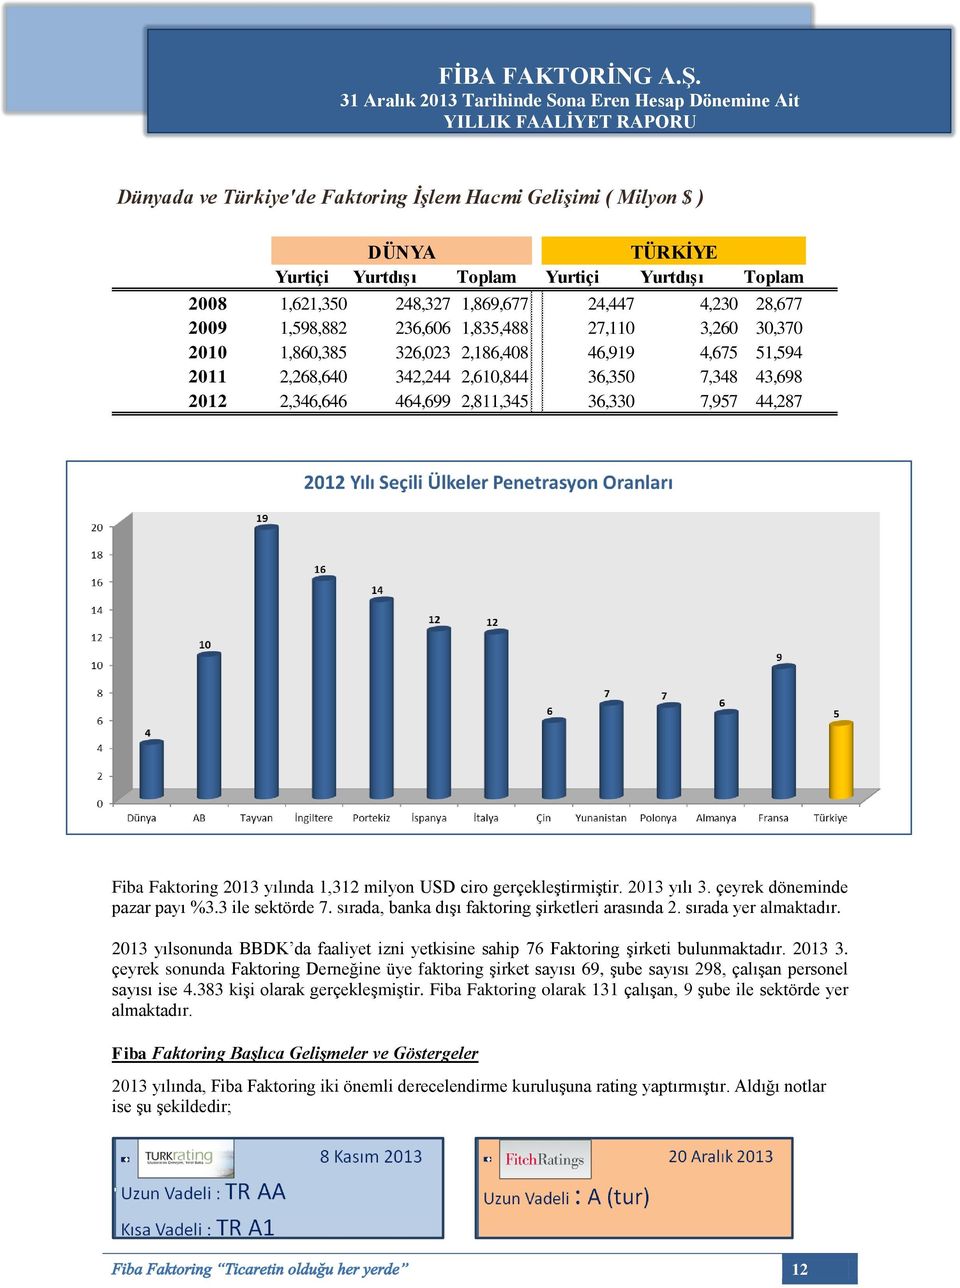 Fiba Faktoring 2013 yılında 1,312 milyon USD ciro gerçekleştirmiştir. 2013 yılı 3. çeyrek döneminde pazar payı %3.3 ile sektörde 7. sırada, banka dışı faktoring şirketleri arasında 2.